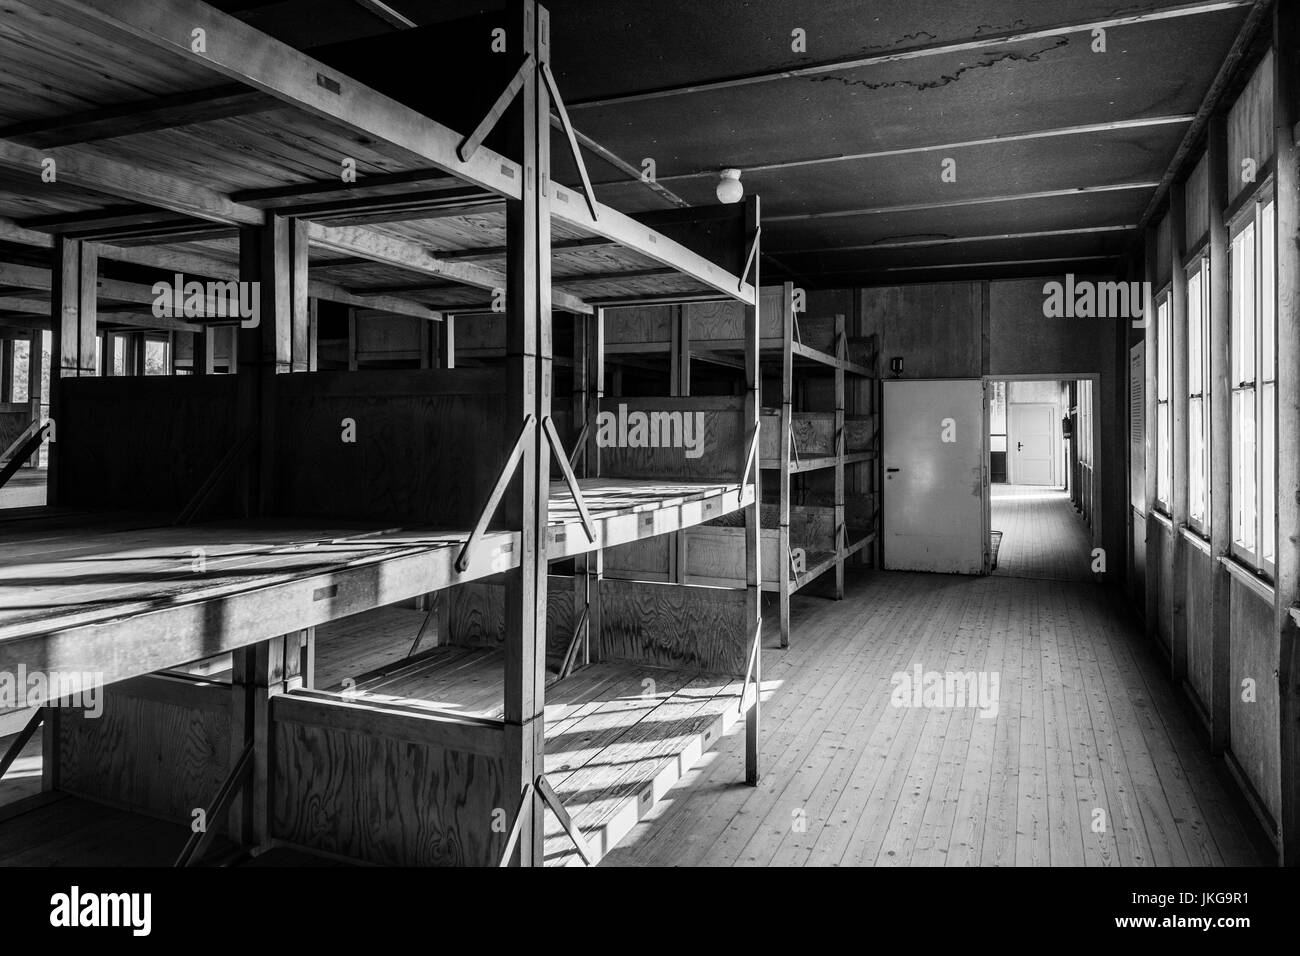 Germany, Bavaria, Munich - Dachau, WW-2 ère camp de concentration nazi, à la caserne, de l'intérieur du bâtiment Banque D'Images